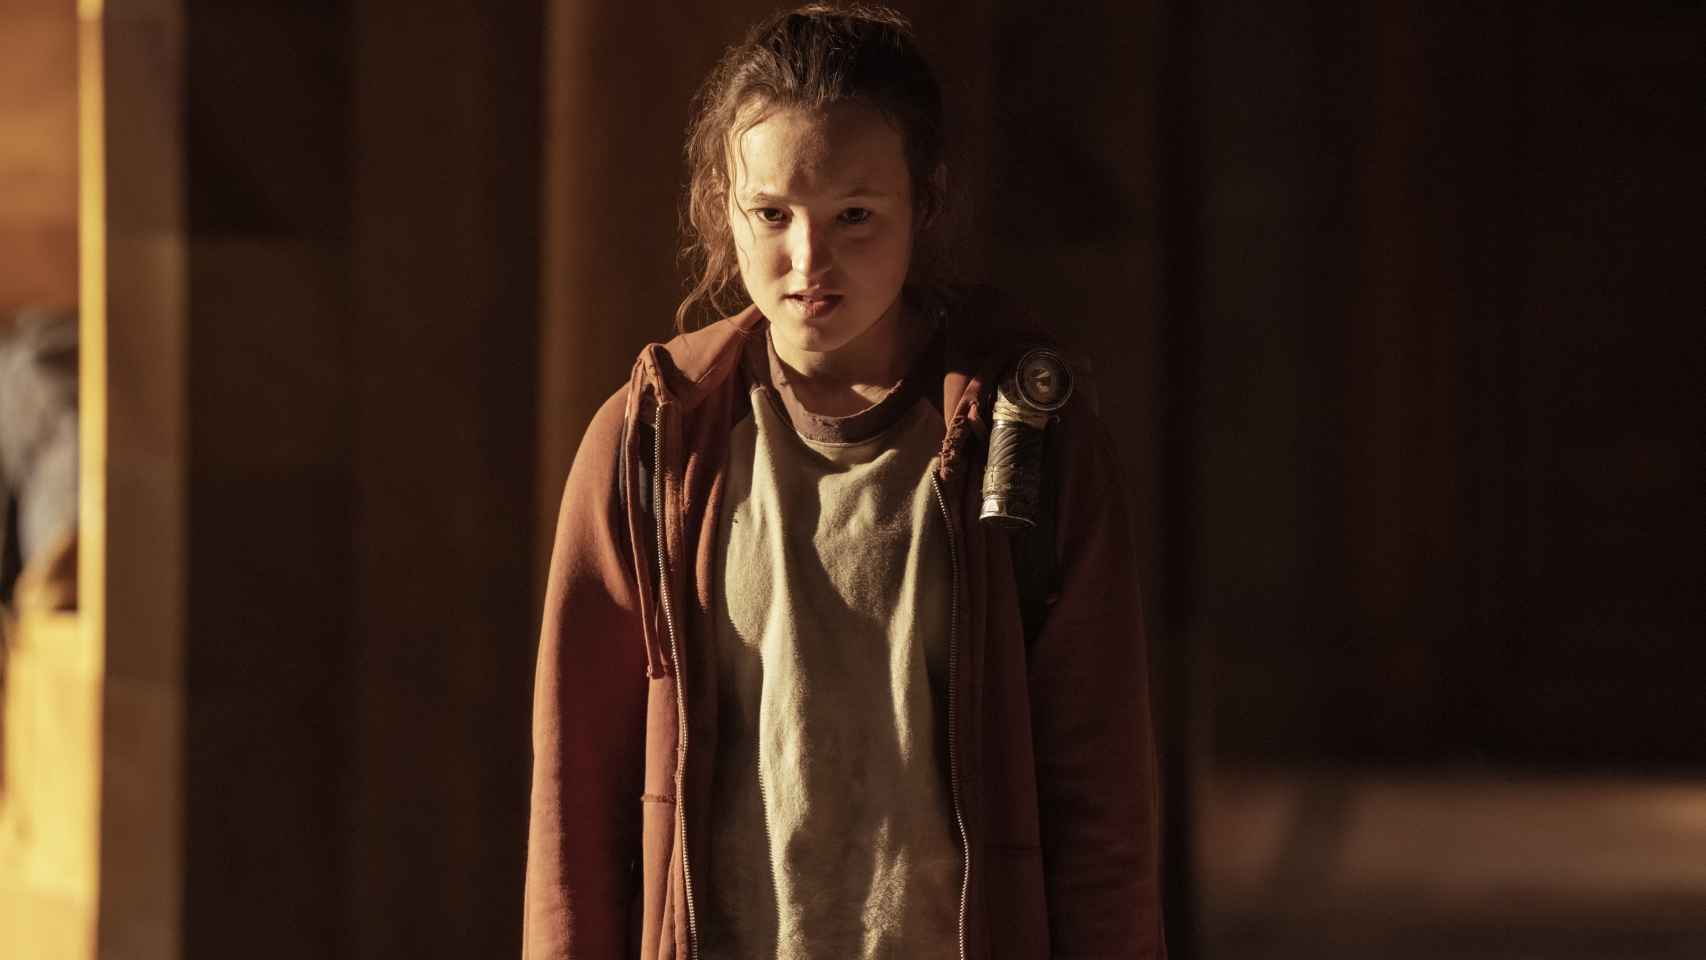 'The Last of Us': HBO Max adelanta el estreno del capítulo 5 de la serie